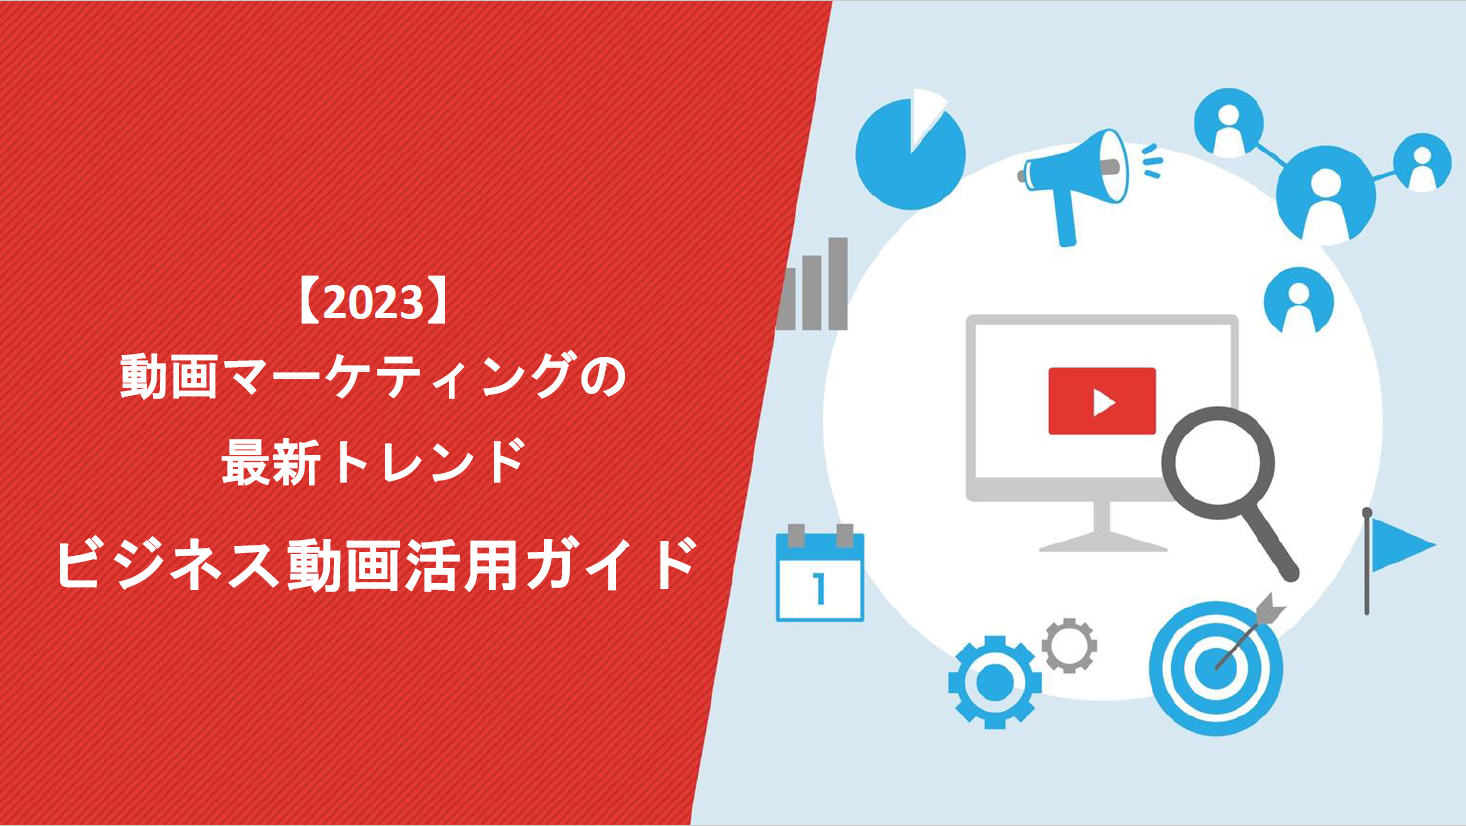 【2023年最新トレンド】ビジネス動画マーケティング活用ガイド